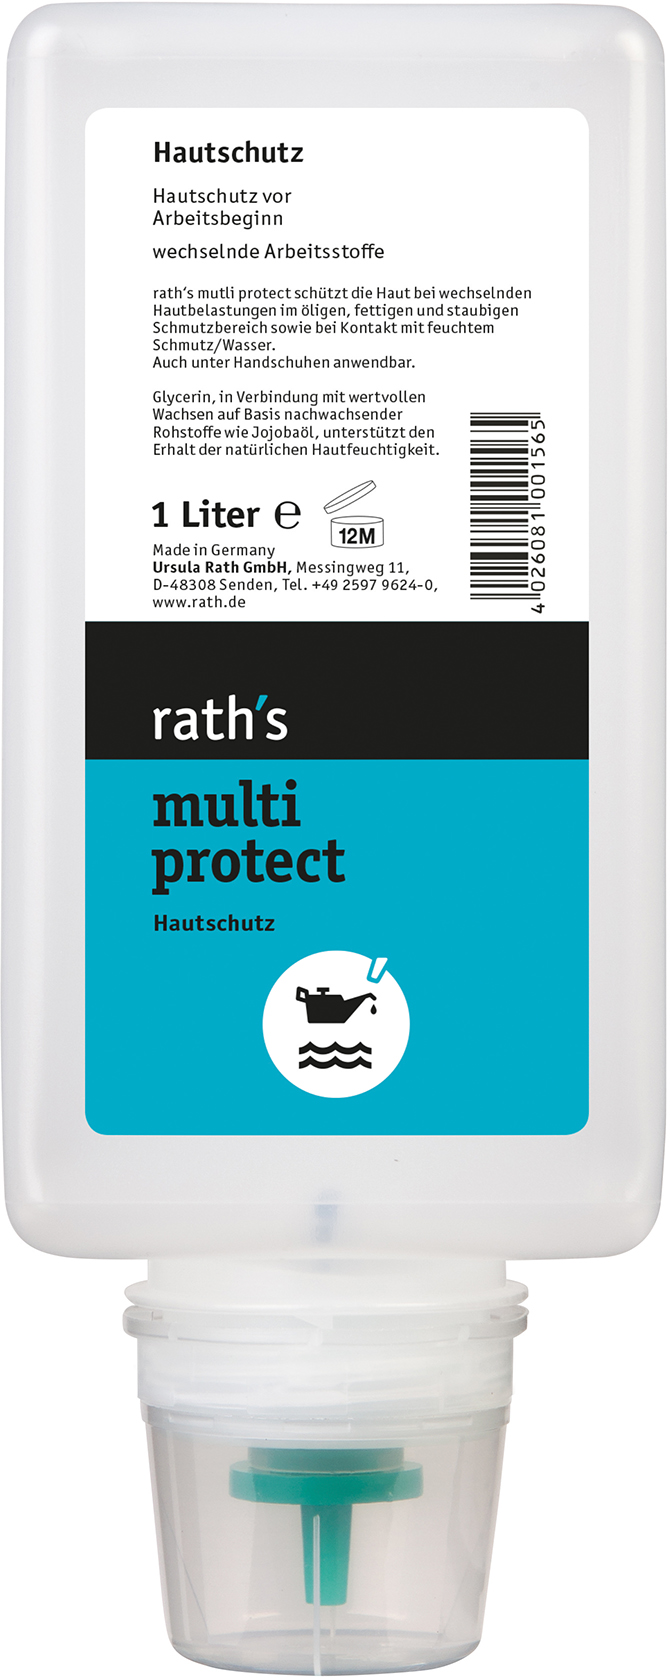 Bild von Raths multi protect Hautschutzlotion 1-Liter-Softflasche